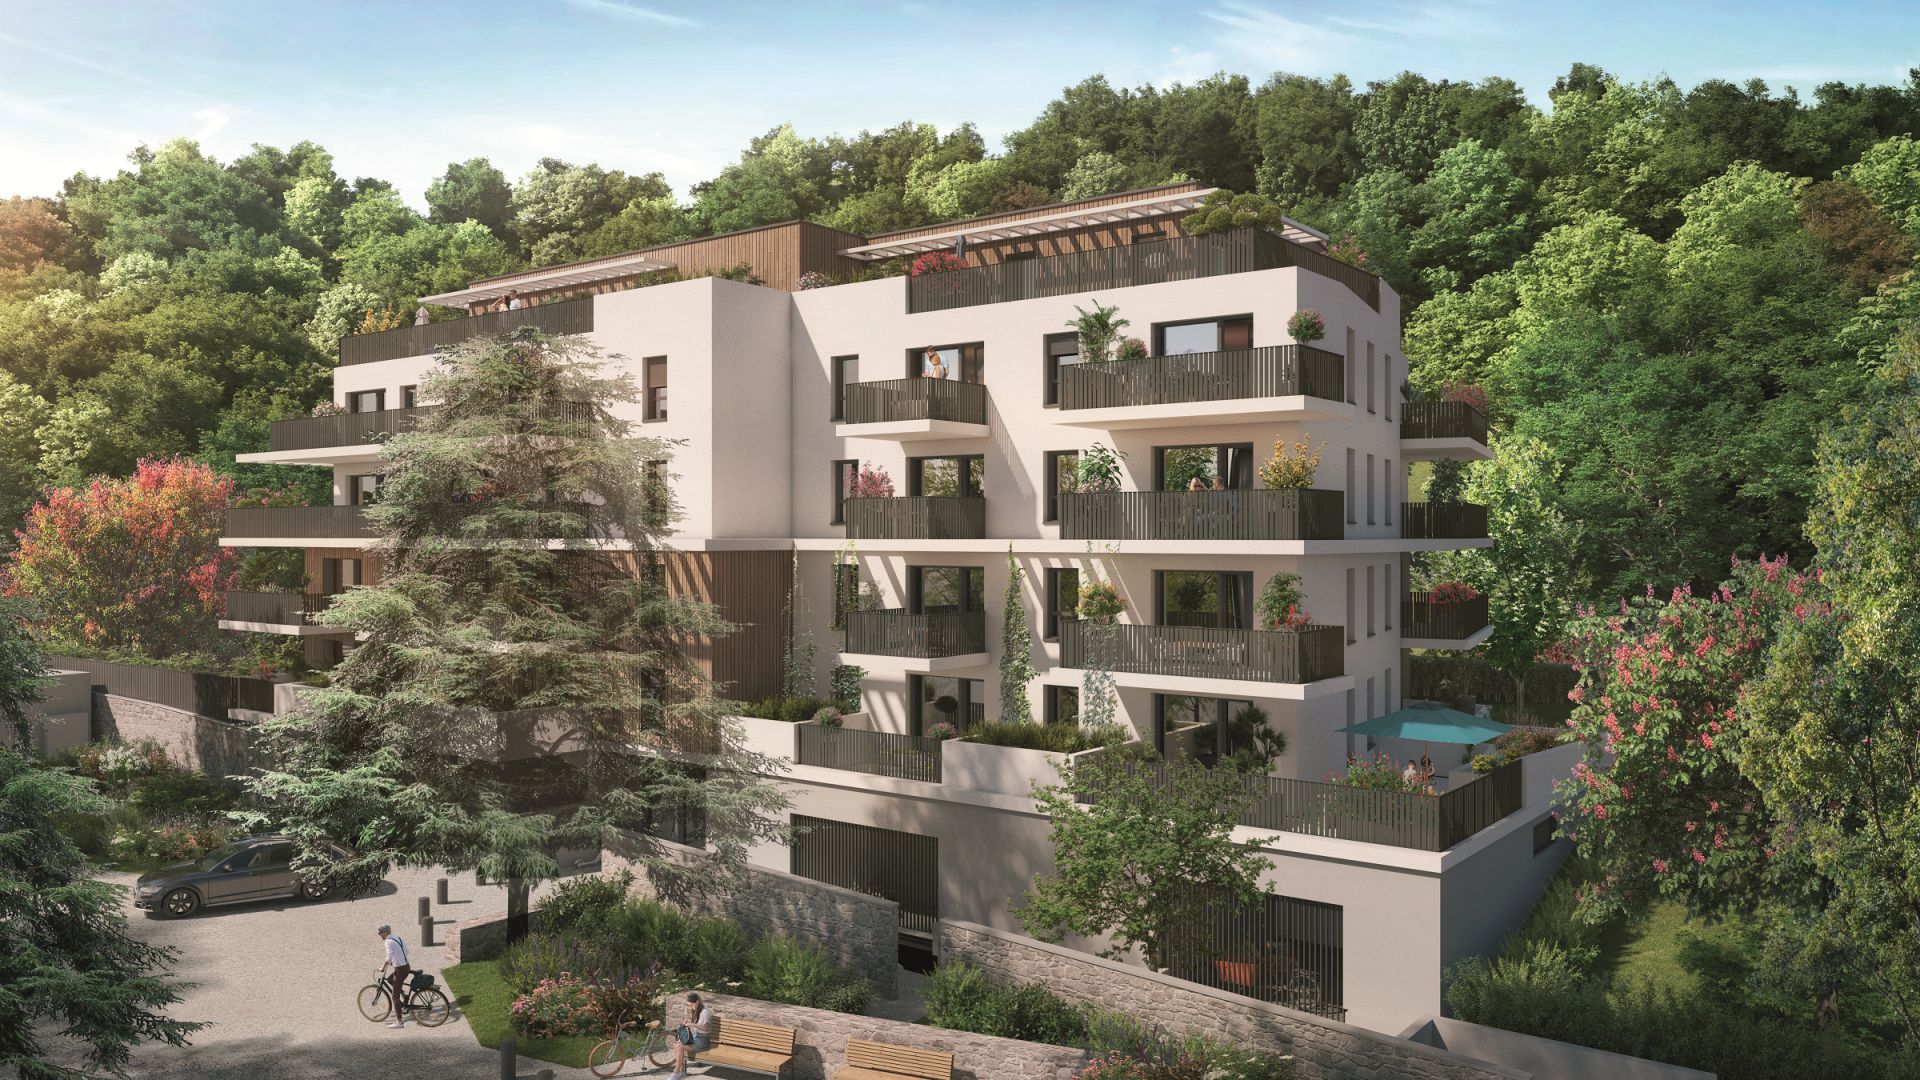 Greencity immobilier - achat appartements neufs du T2 au T4 - Résidence Le City View - 73000 Chambéry